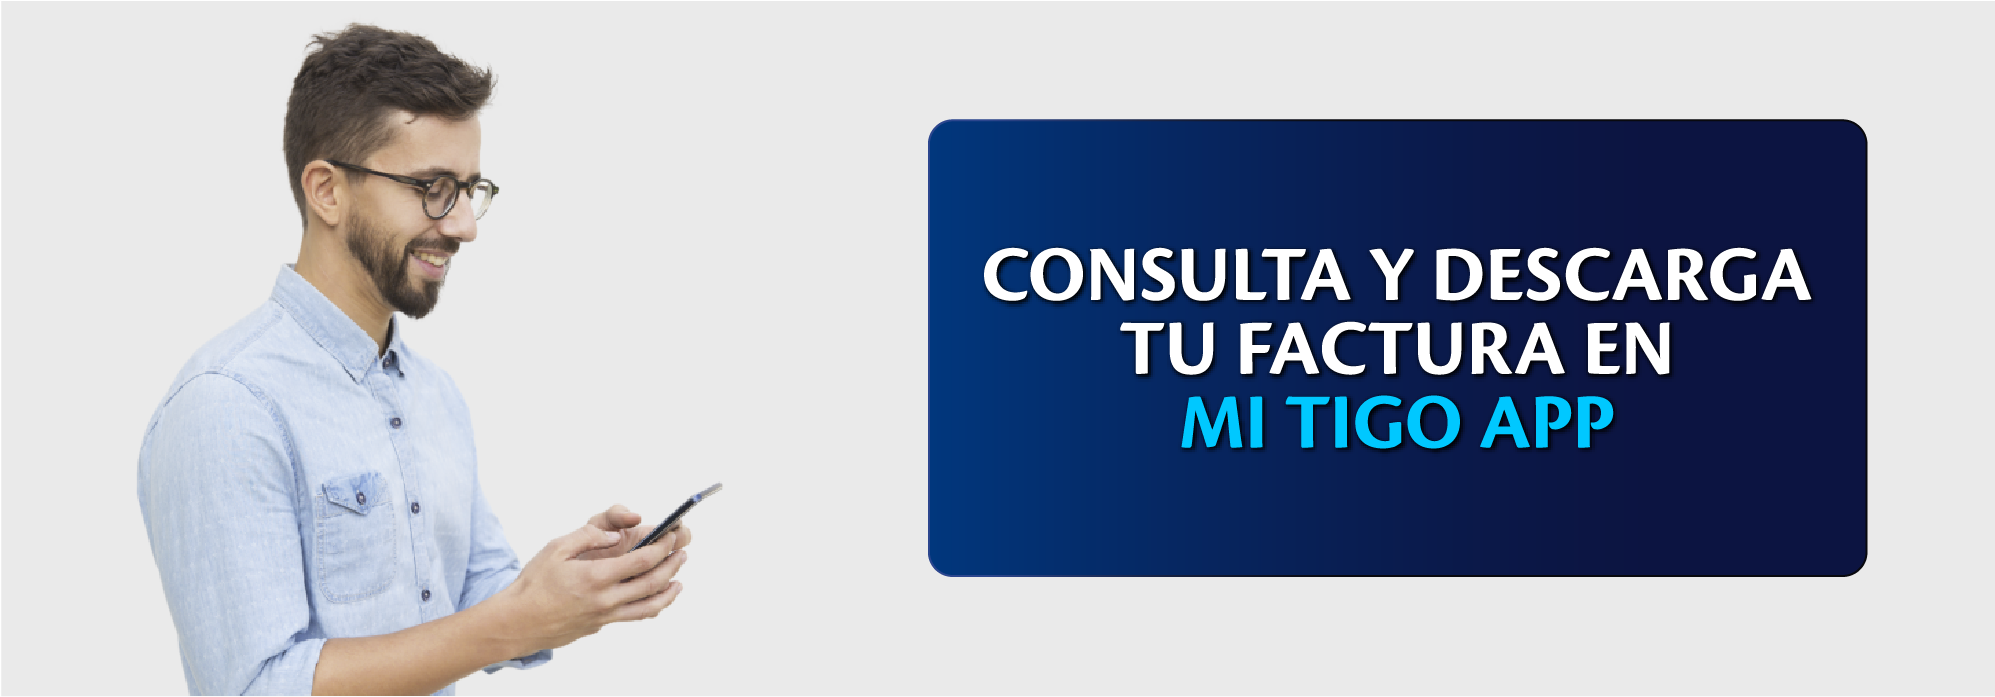 como_consultar_y_descargar_la_factura_en_mi_tigo_app.png